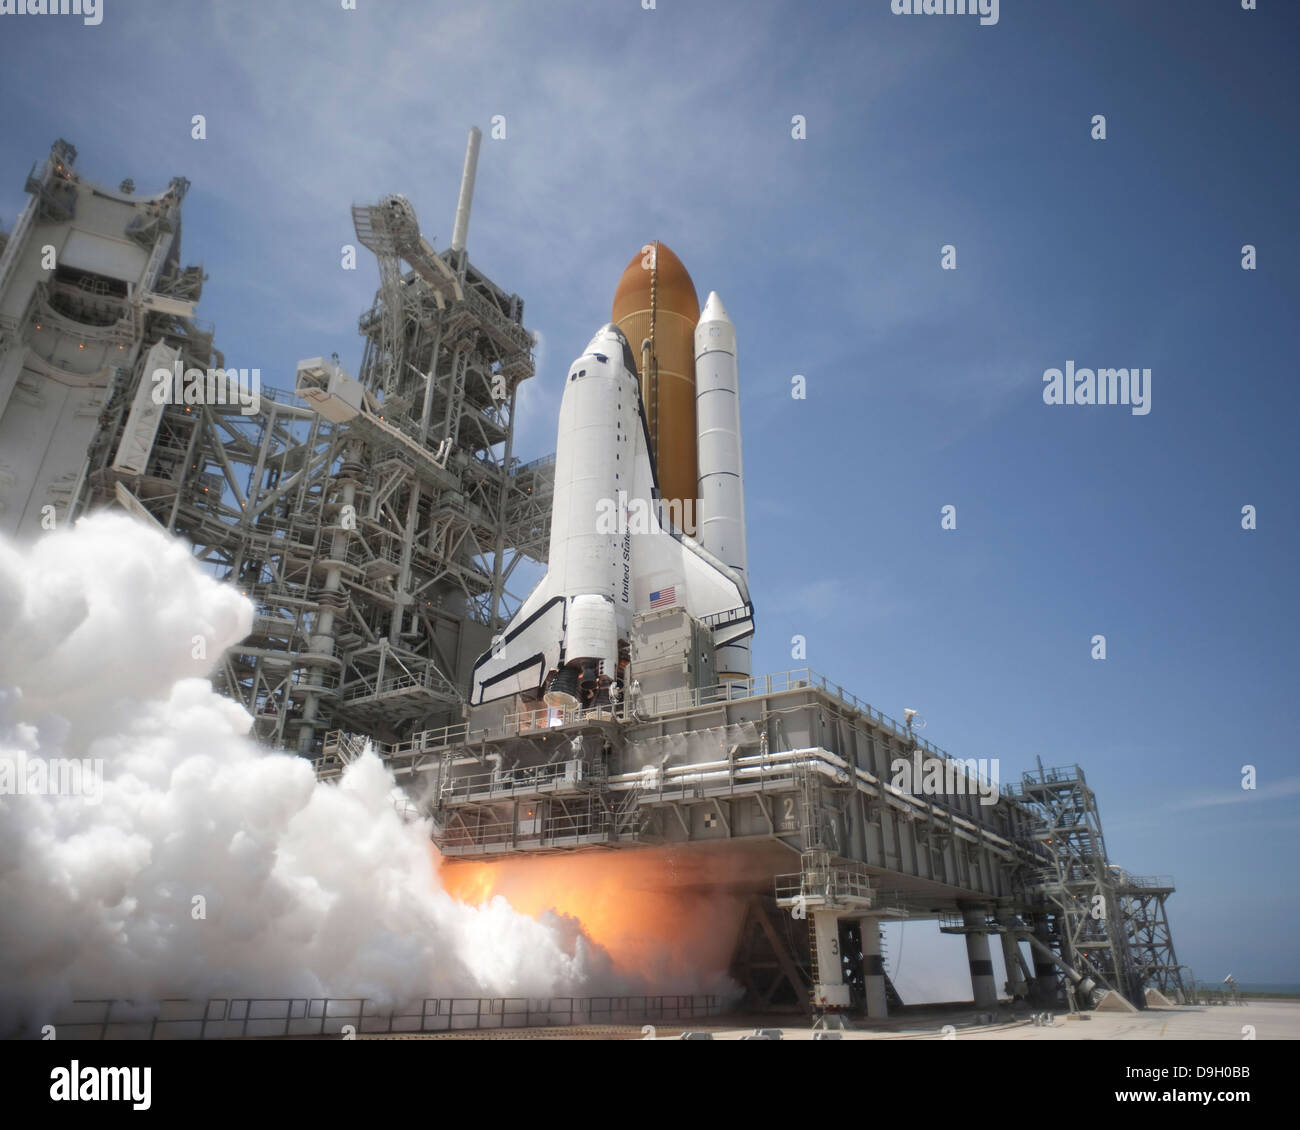 Un pennacchio del getto allo scarico moduli sotto il mobile piattaforma di lancio sulla rampa di lancio 39A come lo space shuttle Atlantis solleva in orbita. Foto Stock